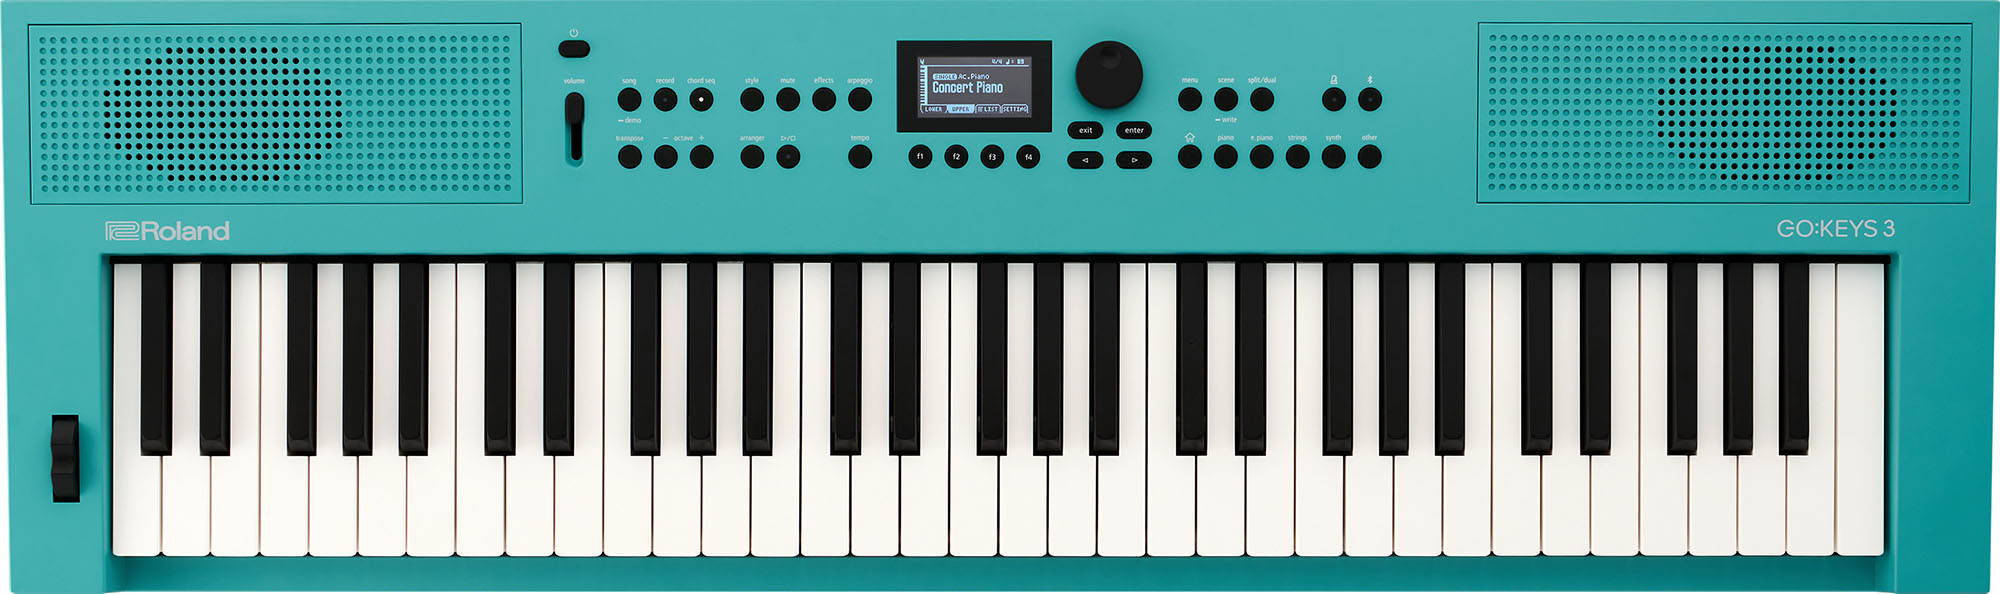 Roland GO:KEYS 3 Keyboard (Turquoise)